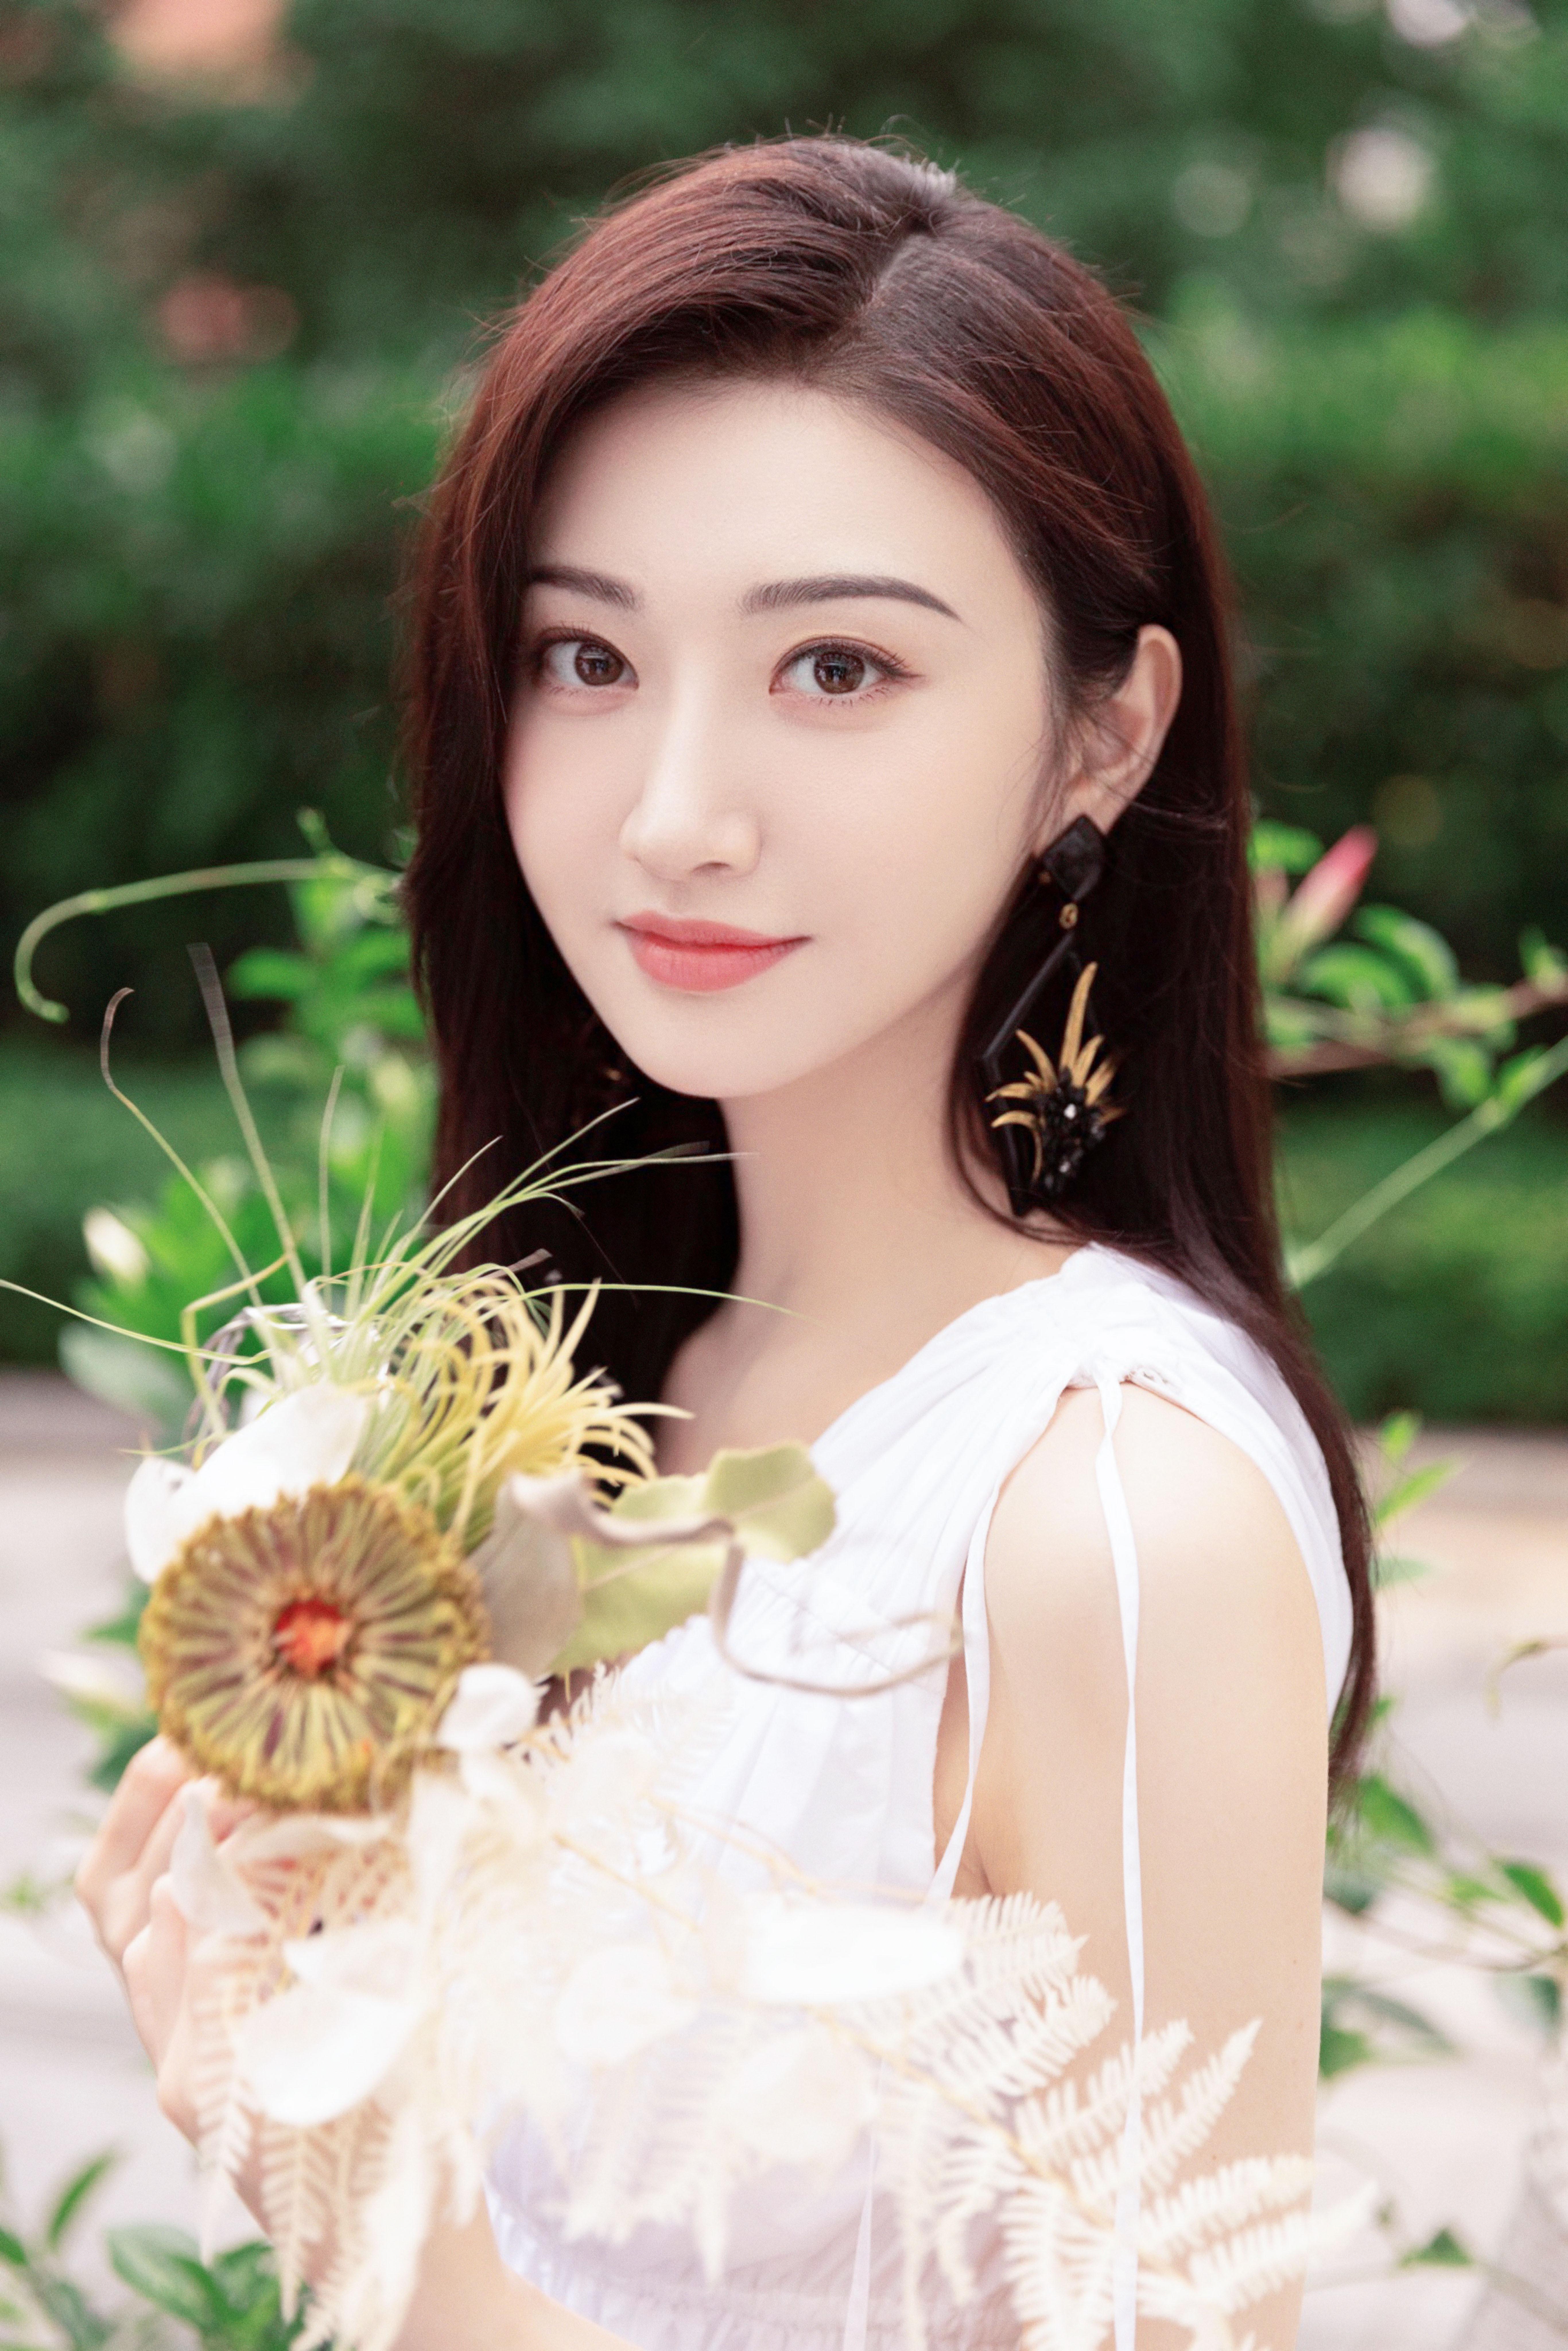 景甜花园写真夏日氛围满满 白色连衣裙清新眼神纯净,